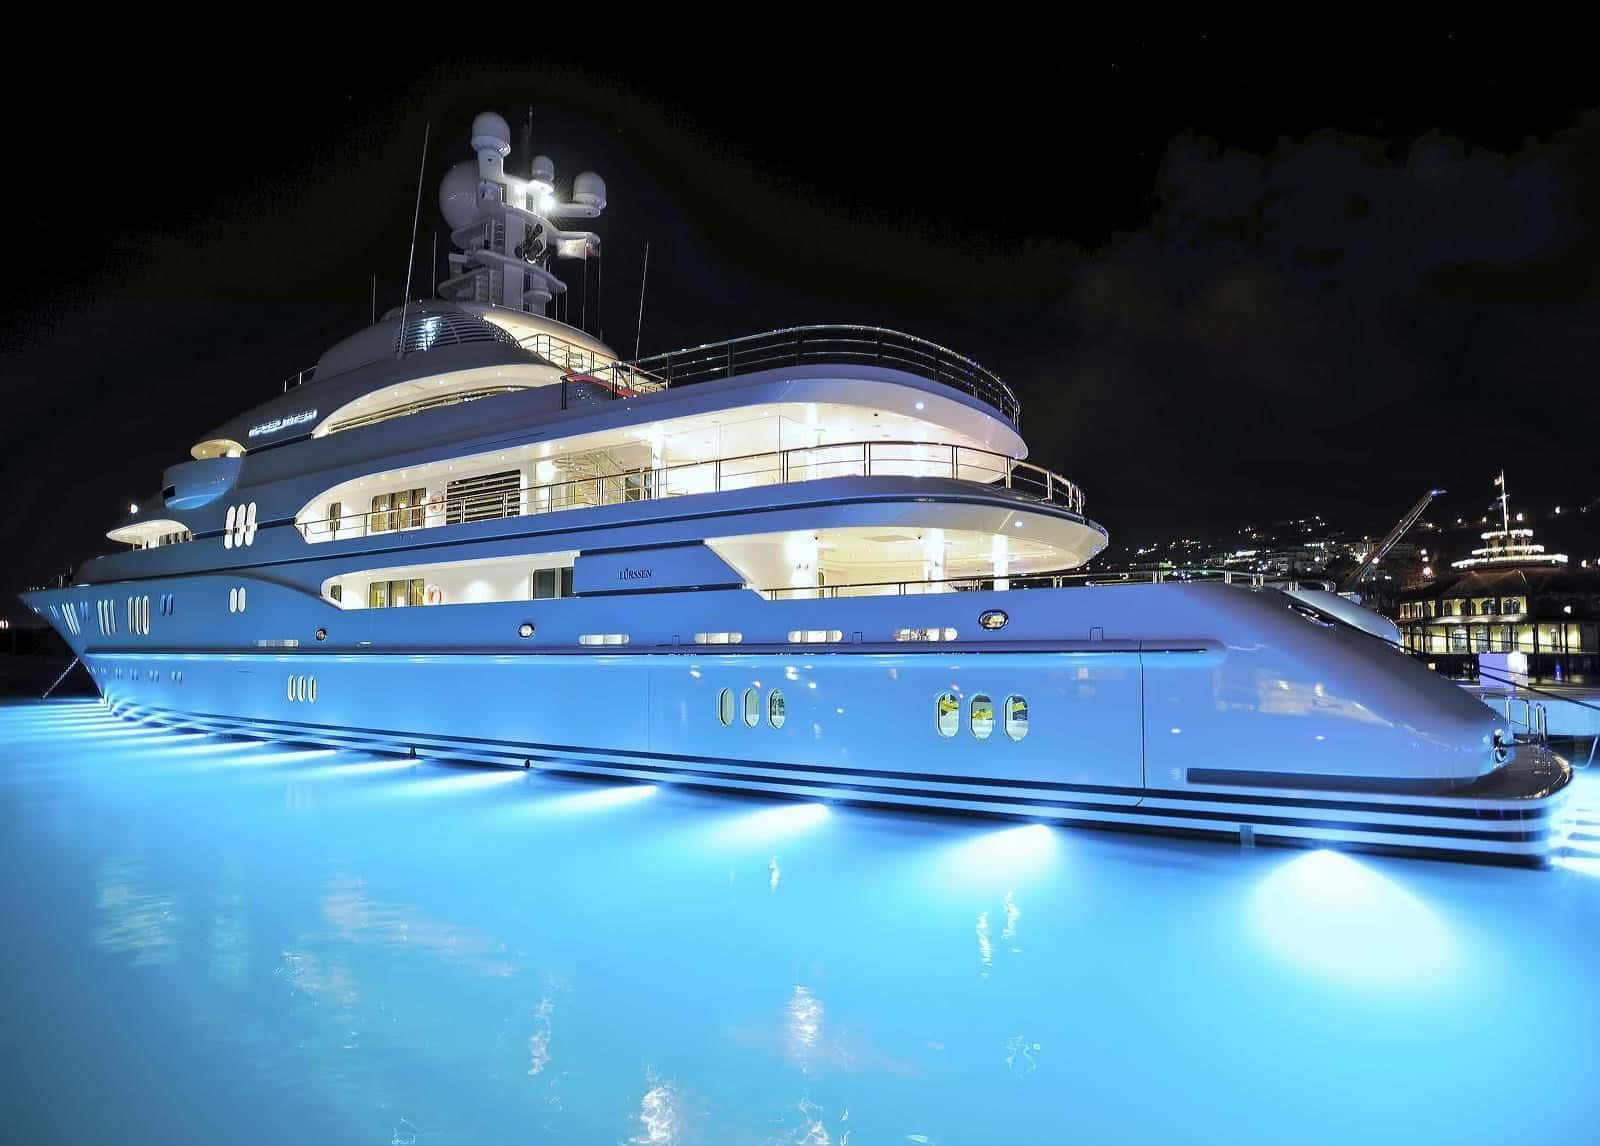 Bildserene Yacht Luxus Mitten Im Ozean